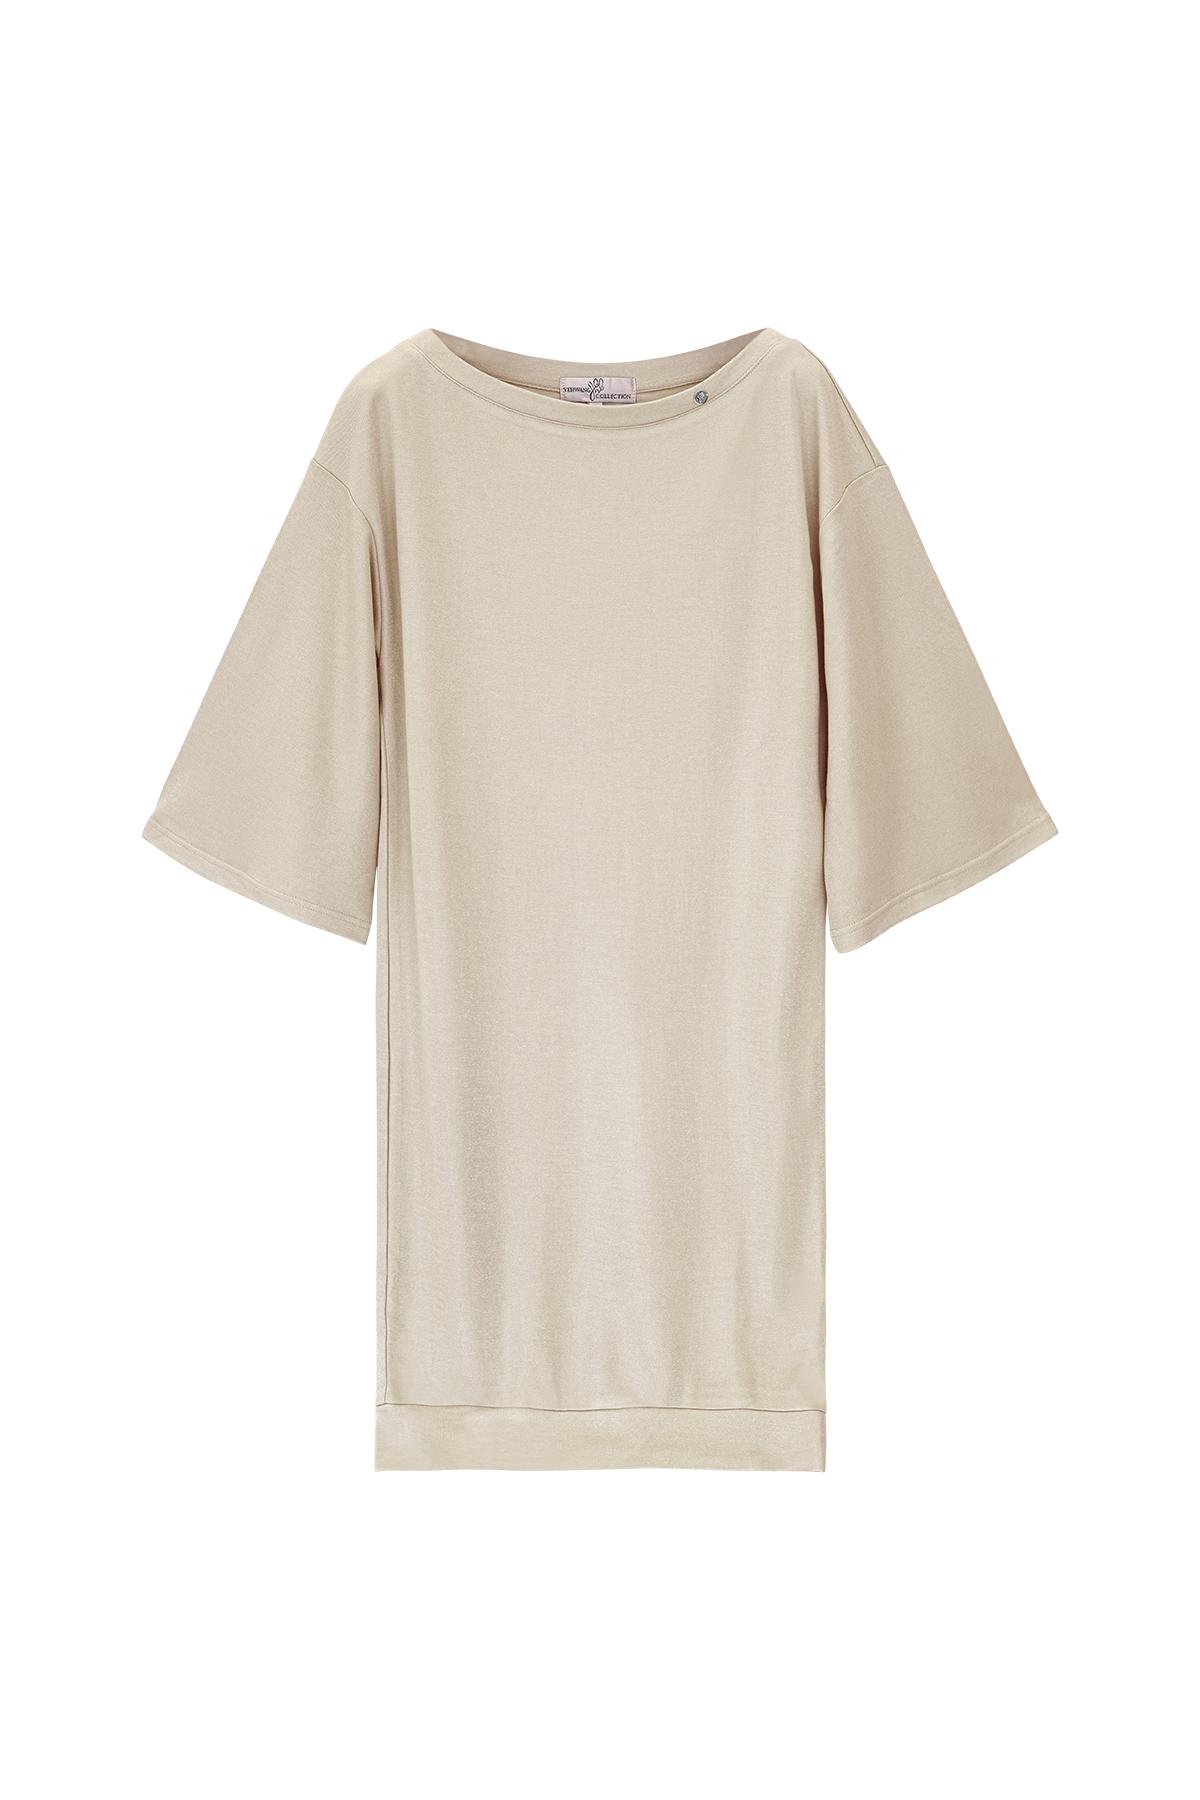 T-Shirt-Kleid mit glänzender Beschichtung Offwhite S